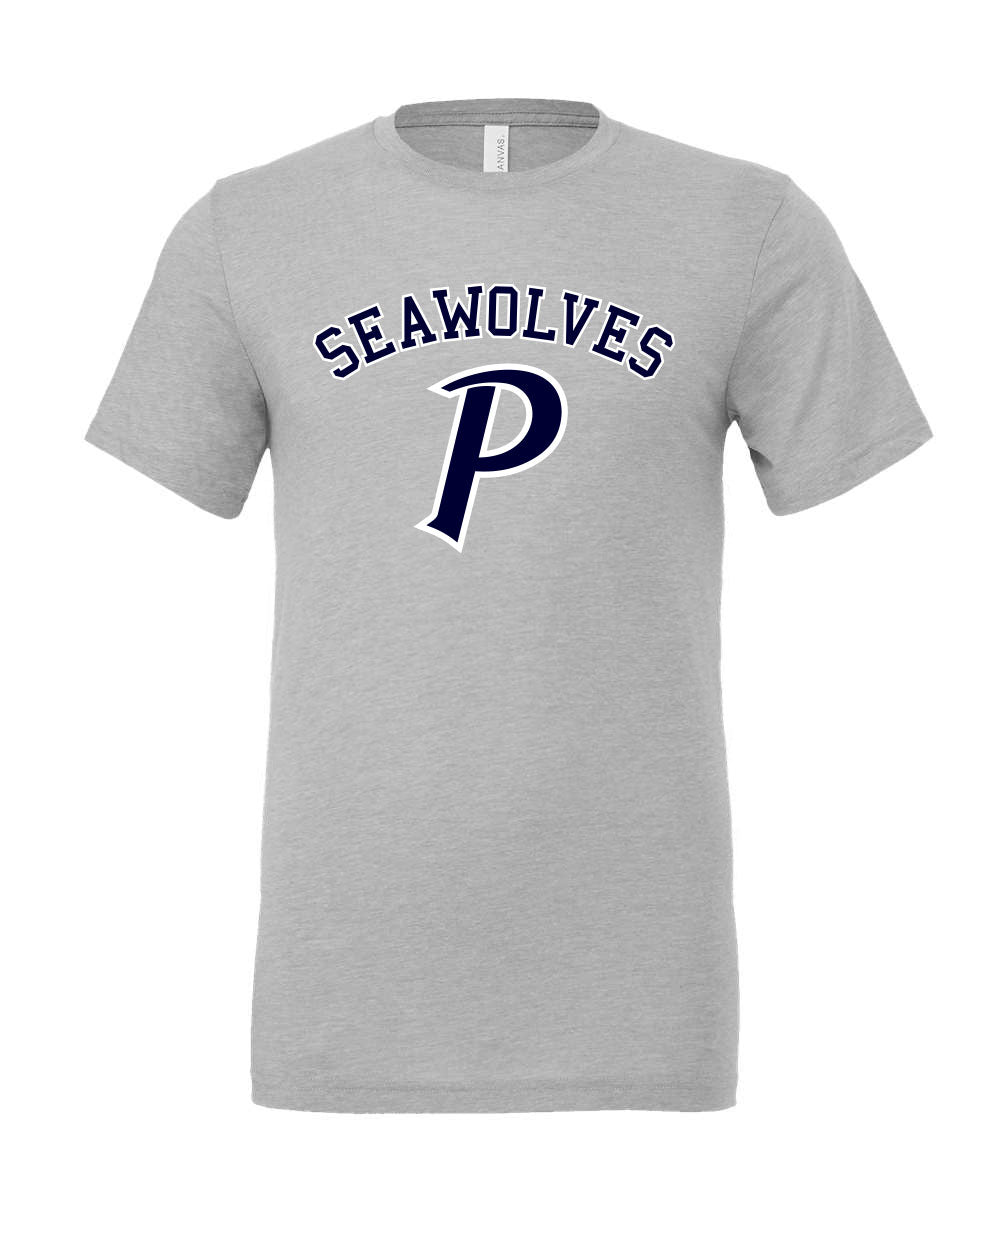 Seawolves T-Shirt - Unisex